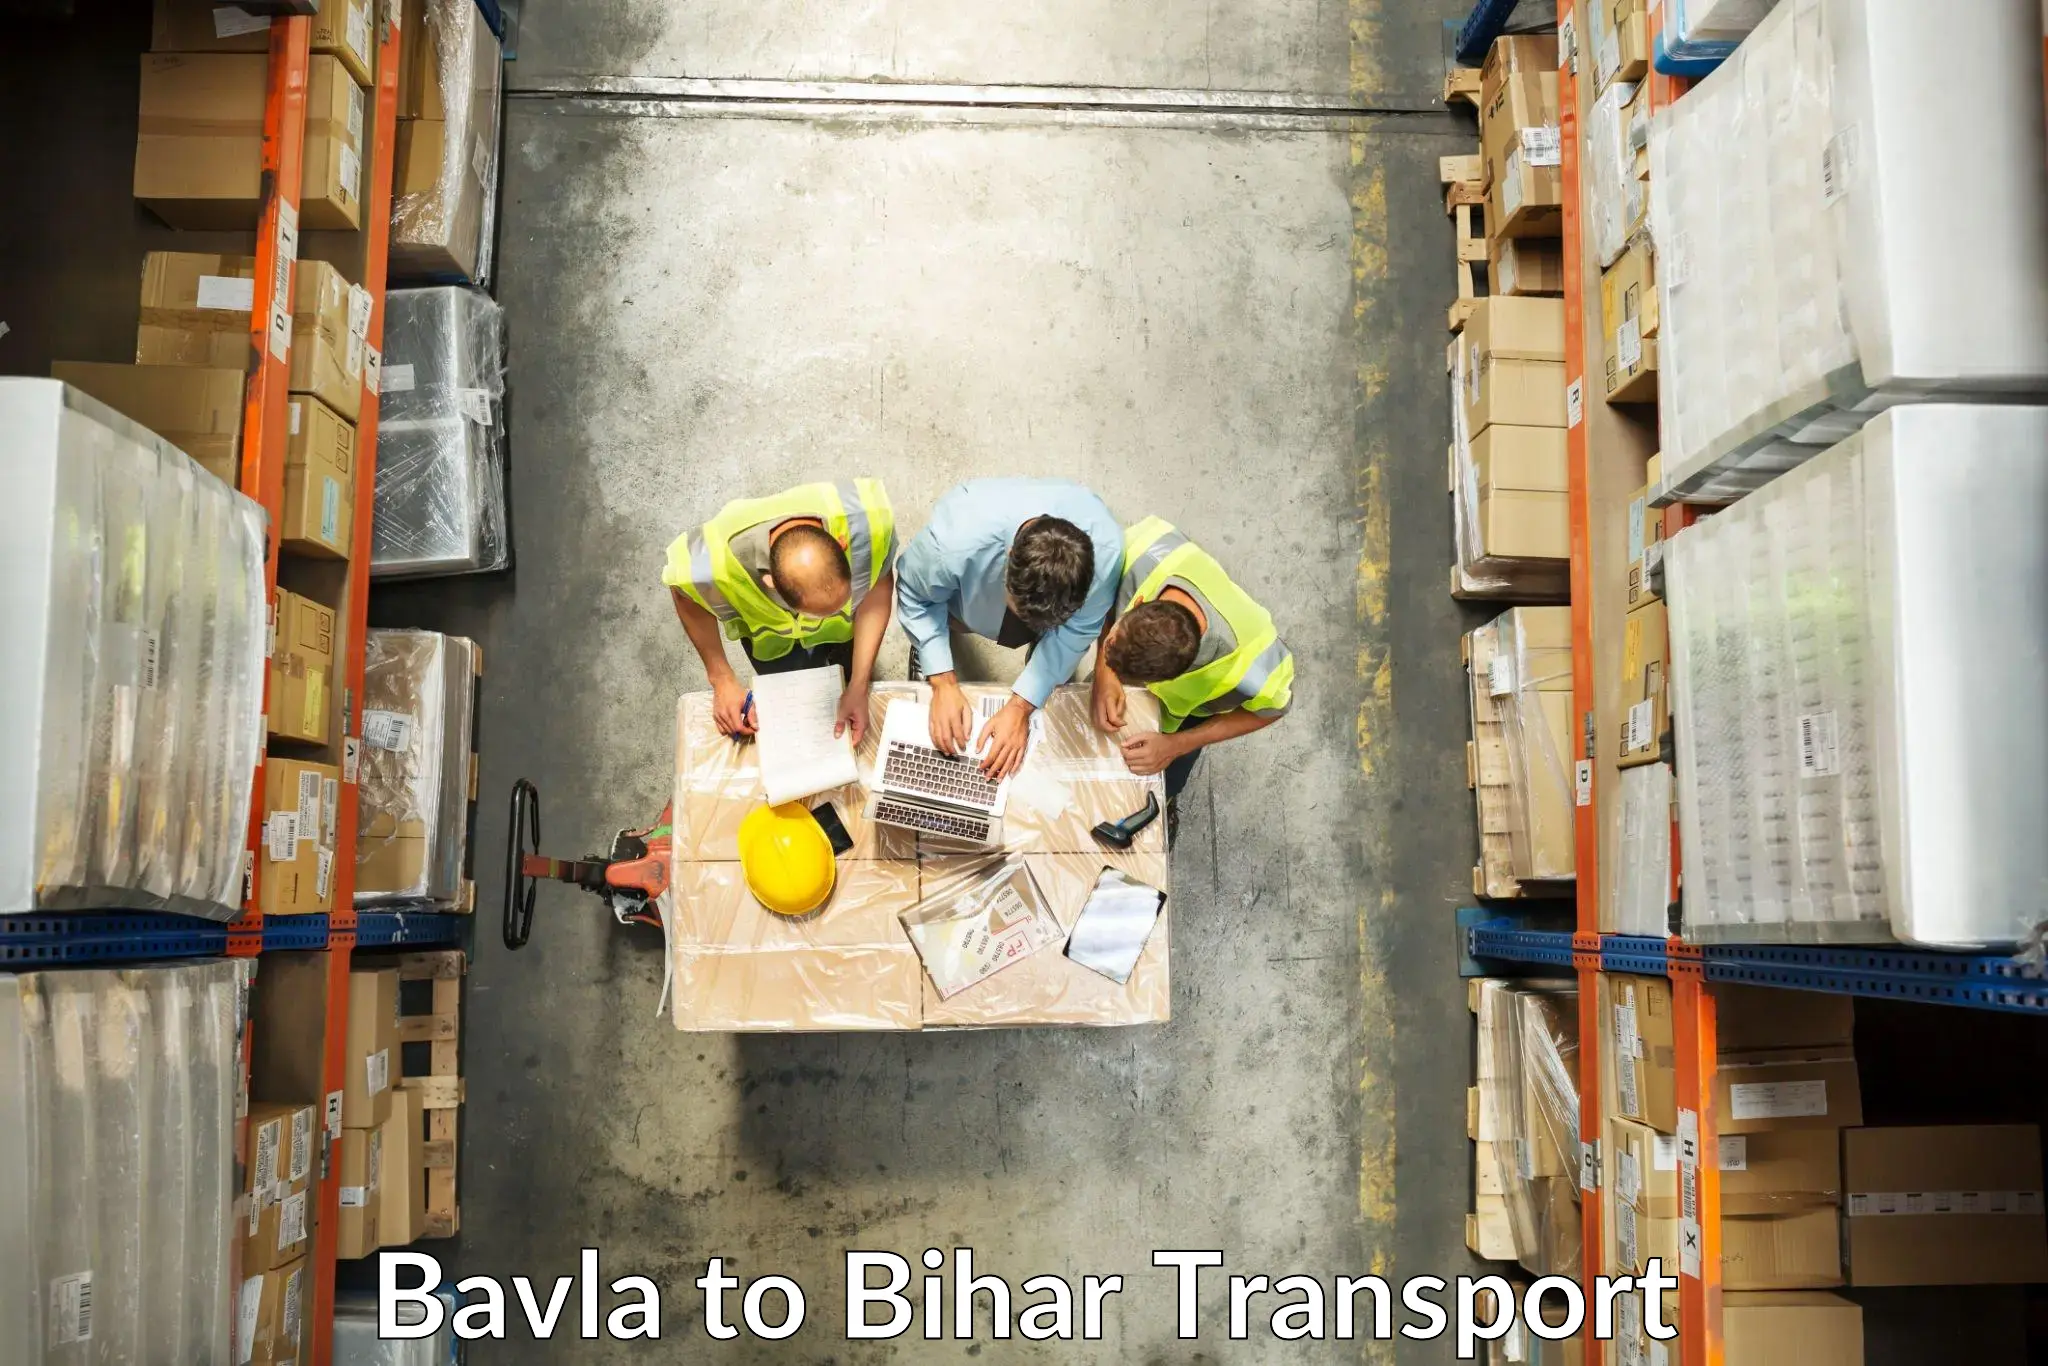 Bike transport service Bavla to Korha